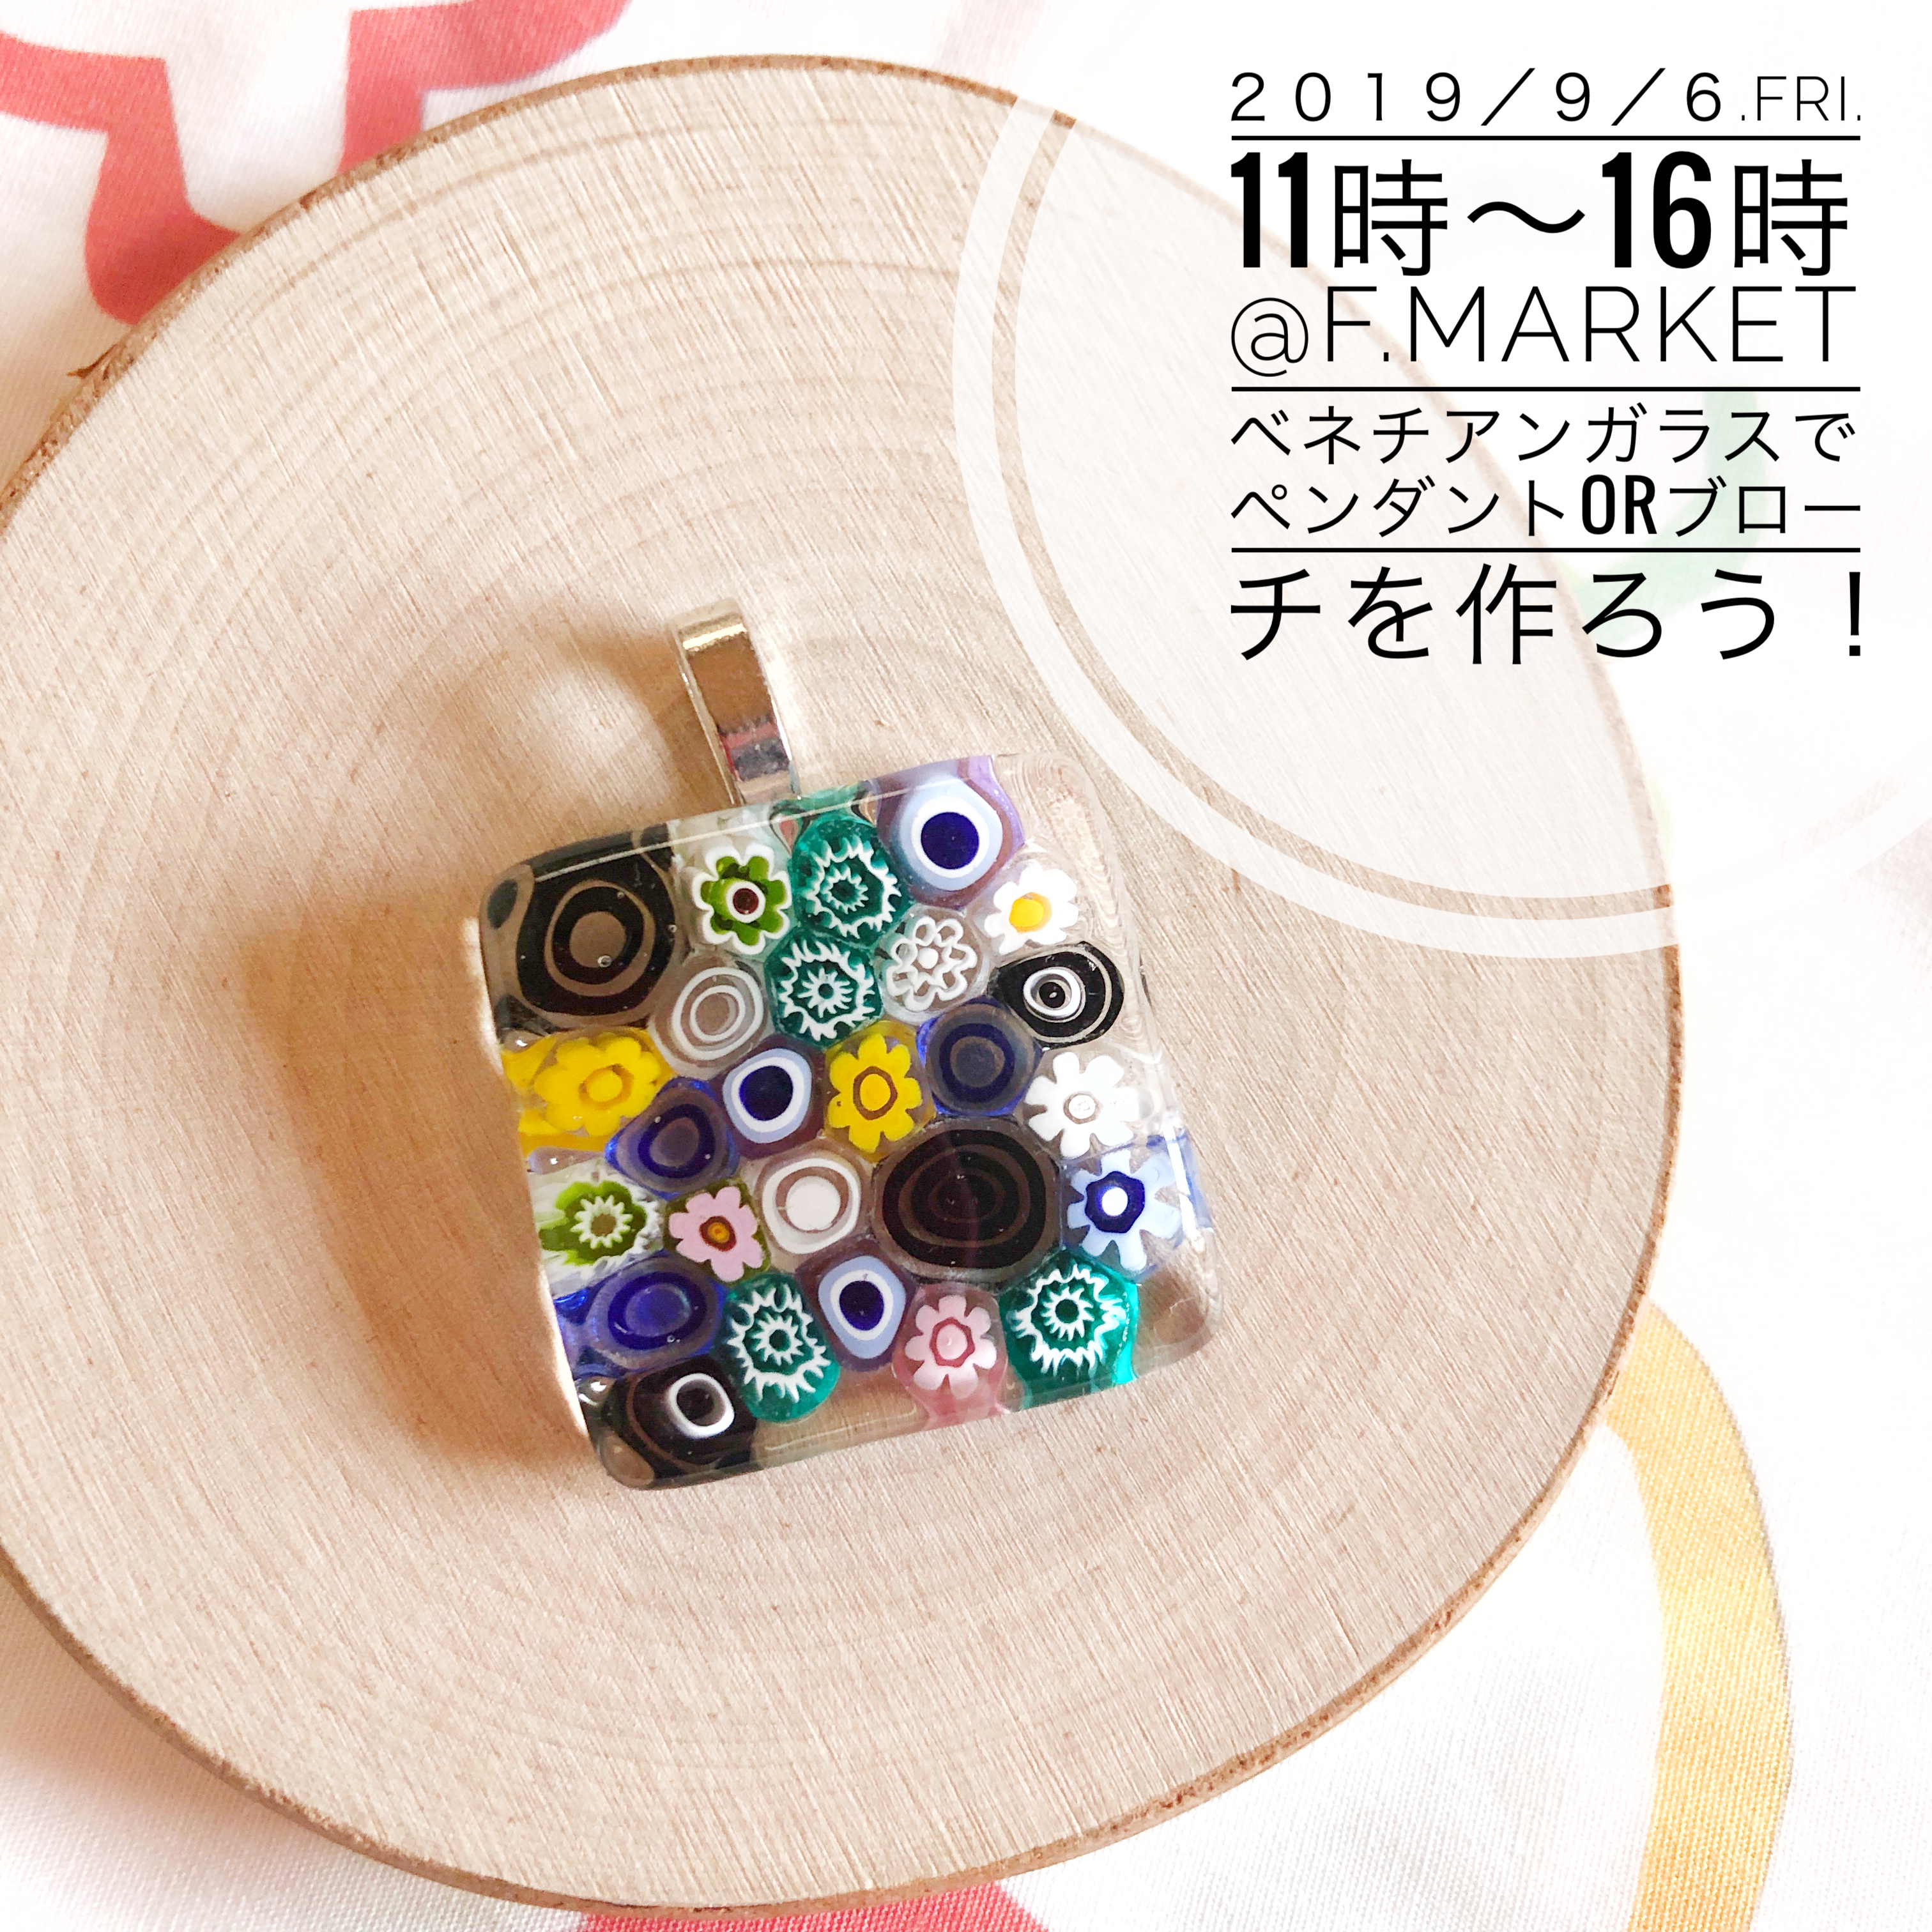 2019/9/6 F.market＠立川高島屋　にてWS開催します！